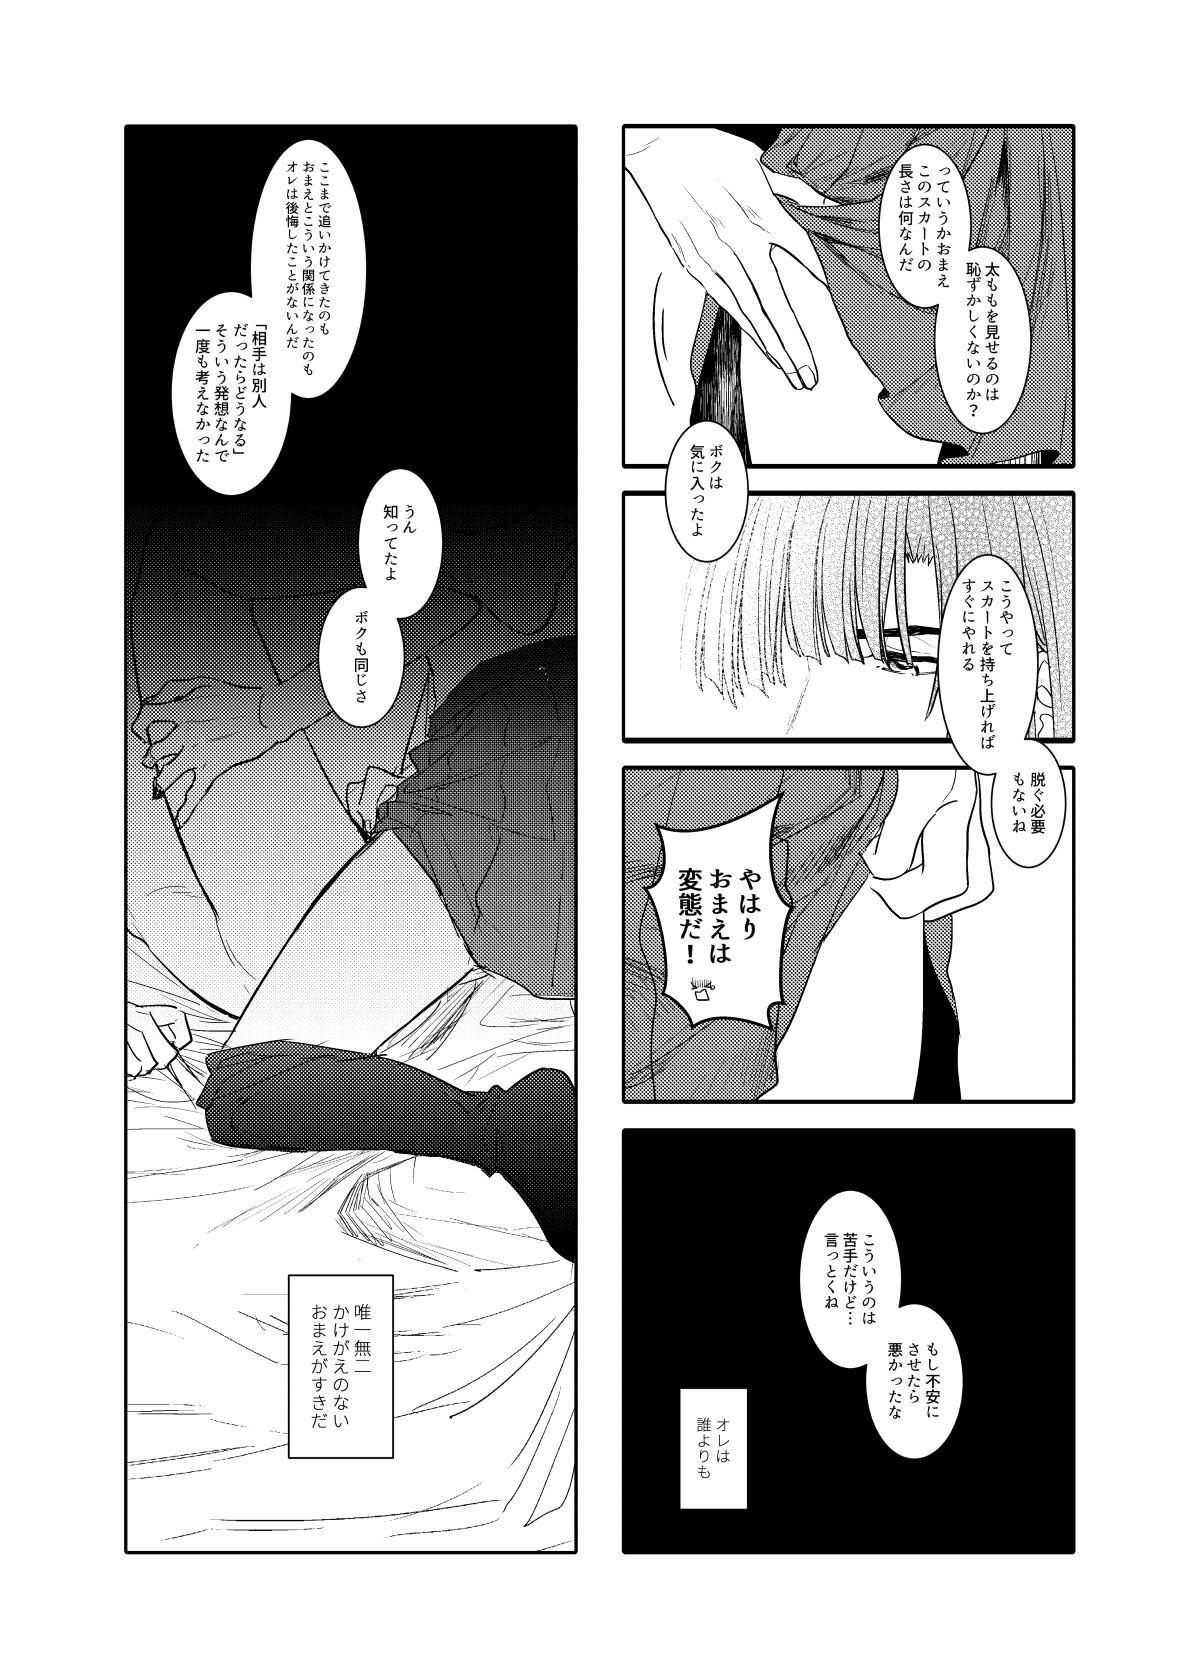 Leaked Saikyou ♂ Kanojo - Hikaru no go Chunky - Page 7